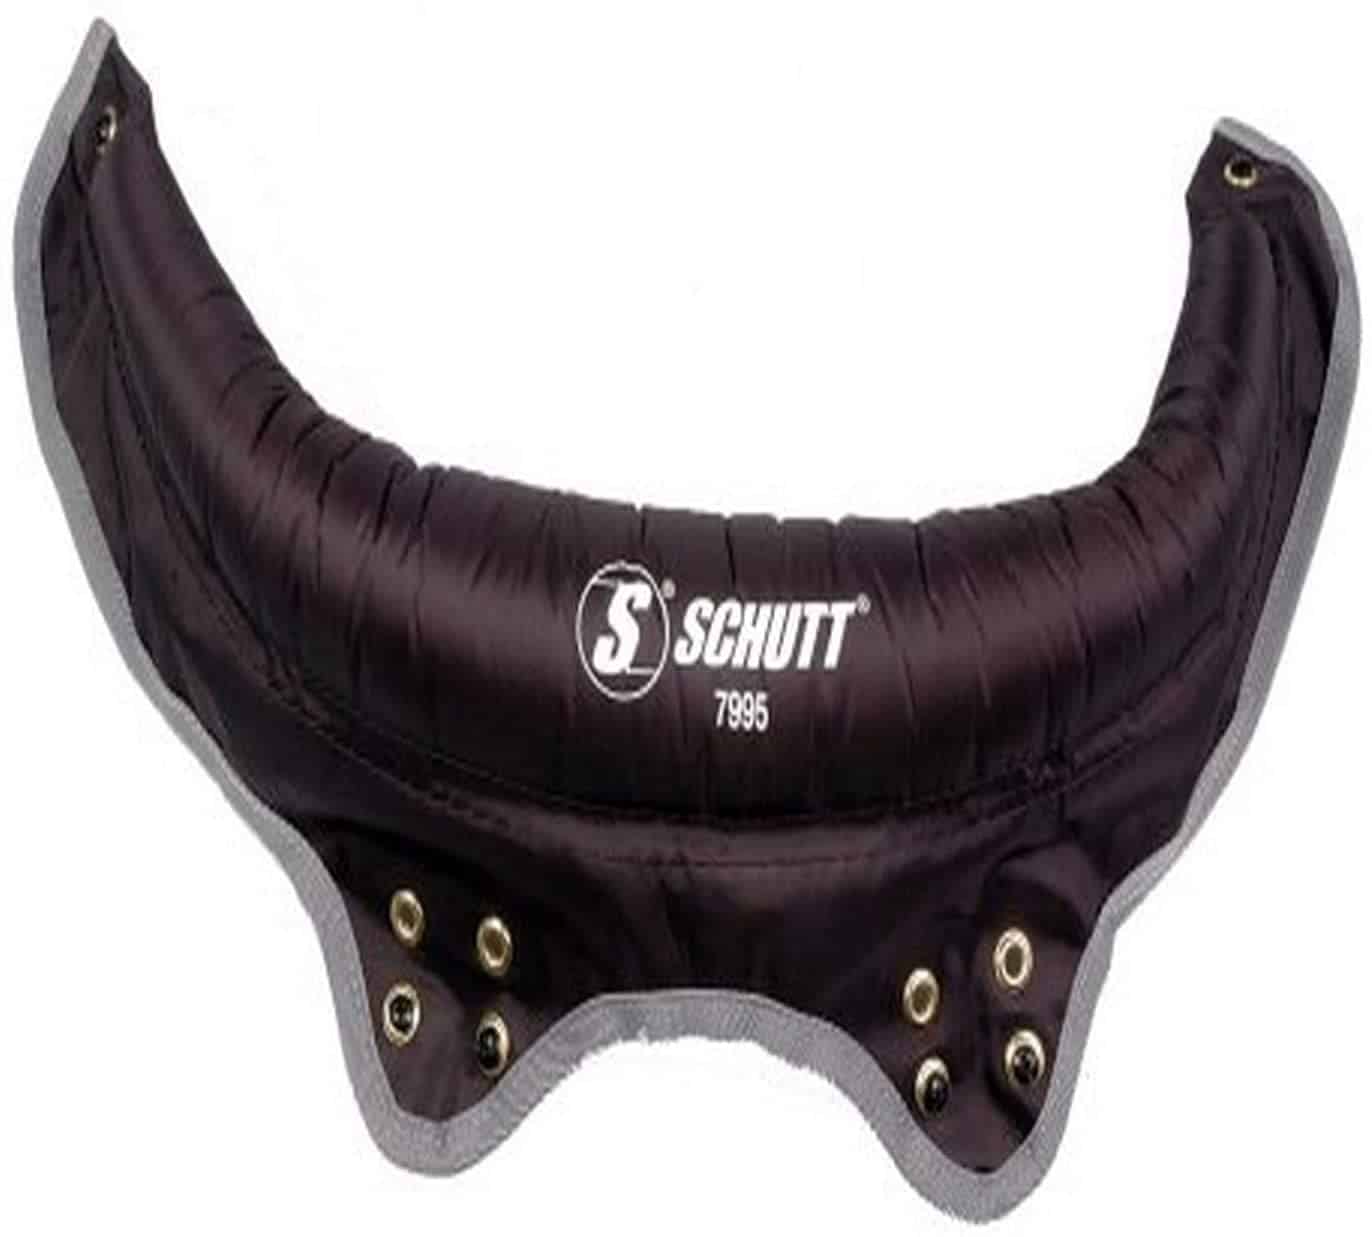 Rolling vozony tsara indrindra: Schutt Varsity Football Shoulder Pad Collar